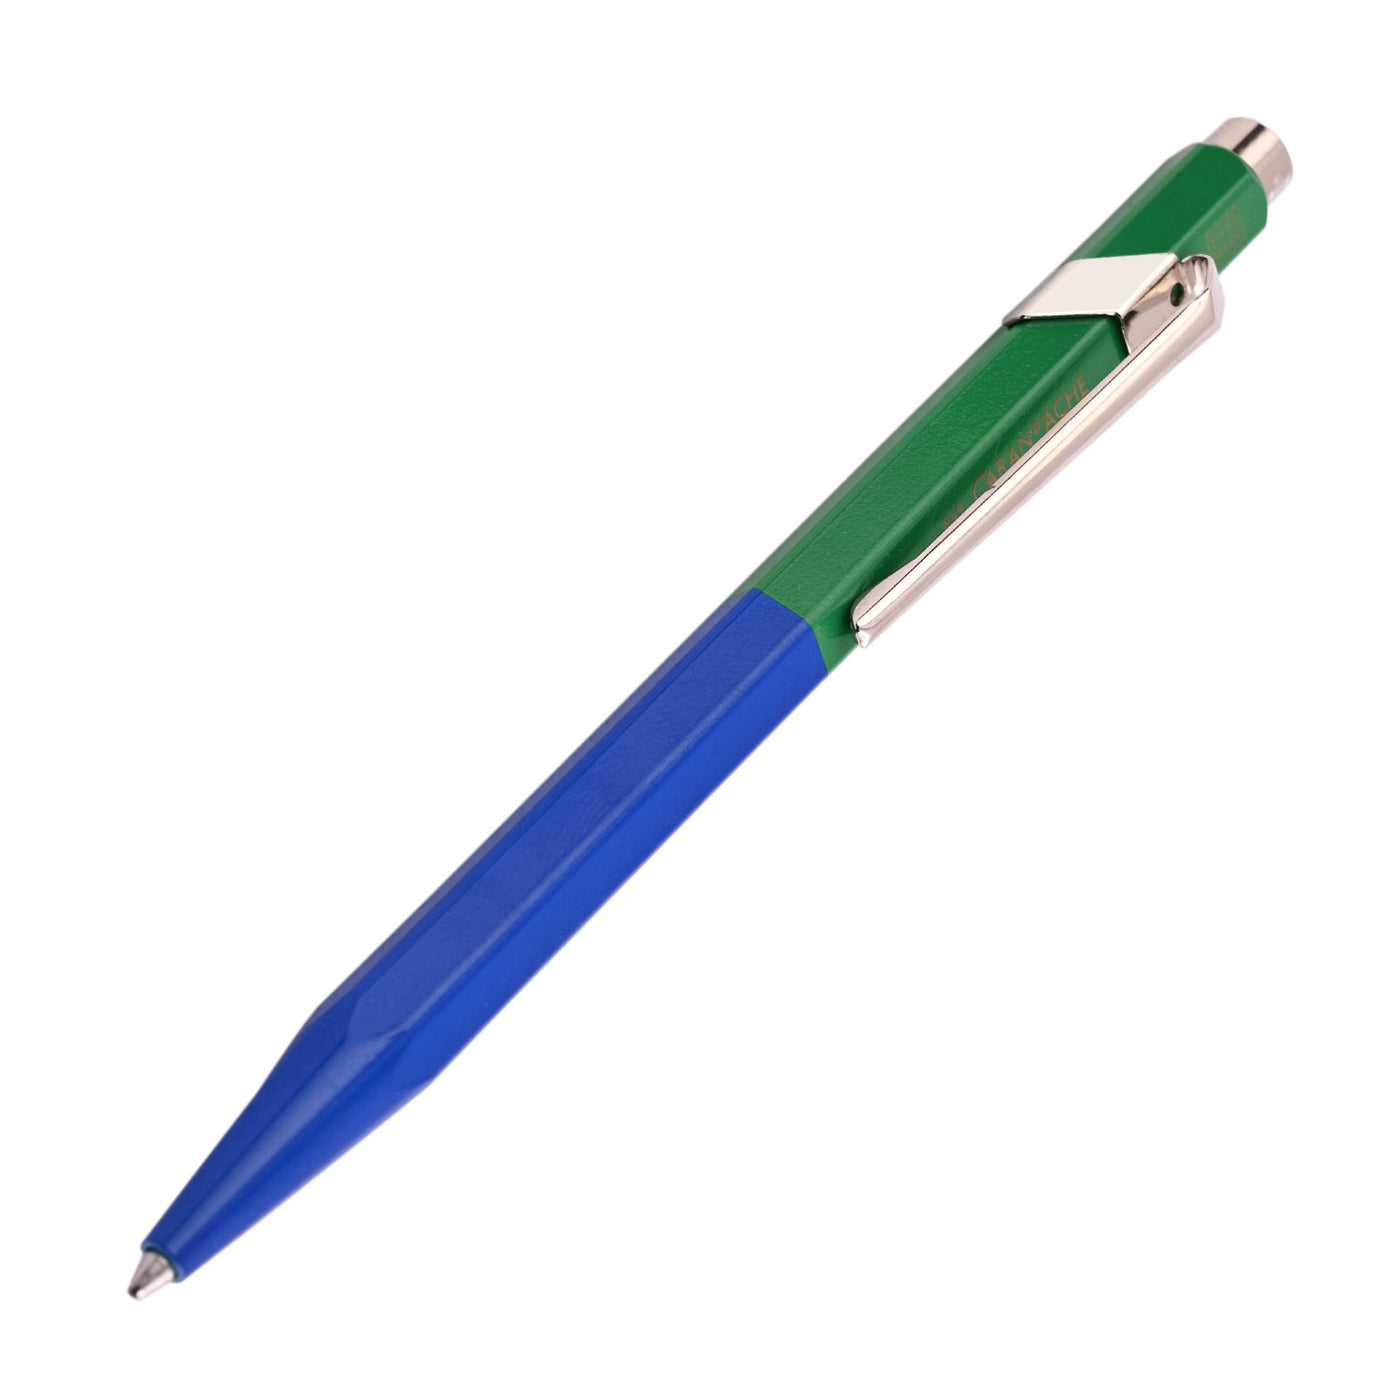 Caran d'Ache 849 Paul Smith Ball Pen - Cobalt Blue & Emerald Green (Limited Edition) 8